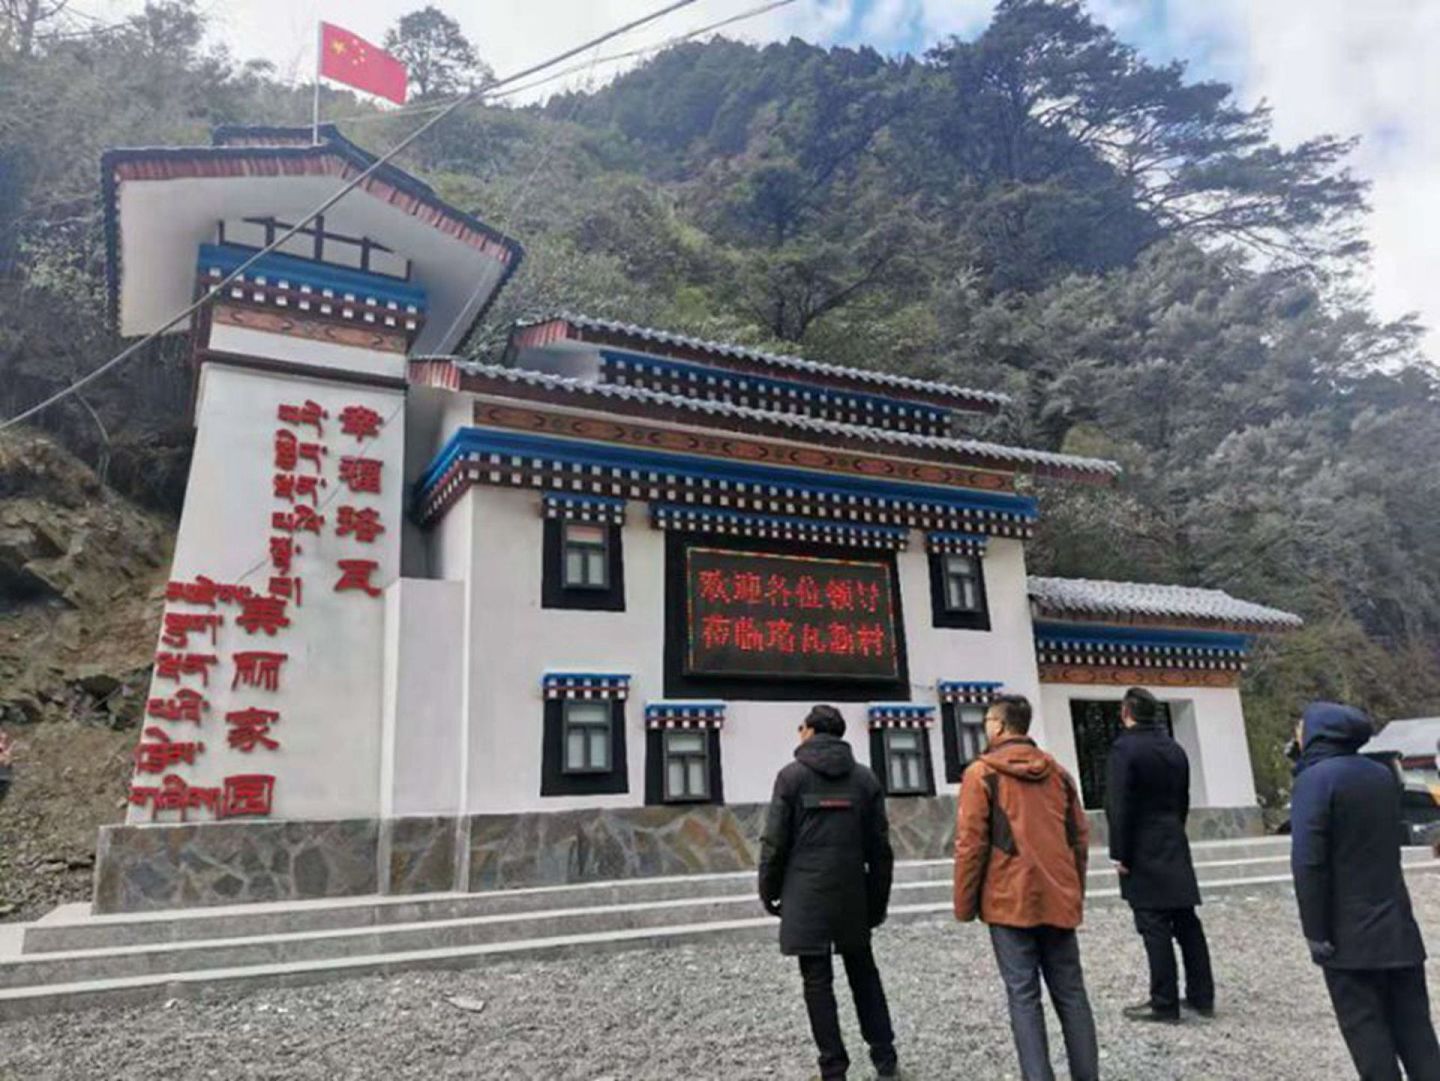 西藏易境旅游景观规划设计院承接的珞瓦新村项目2020年12月17日落成现场。（微博@LQ、柏）